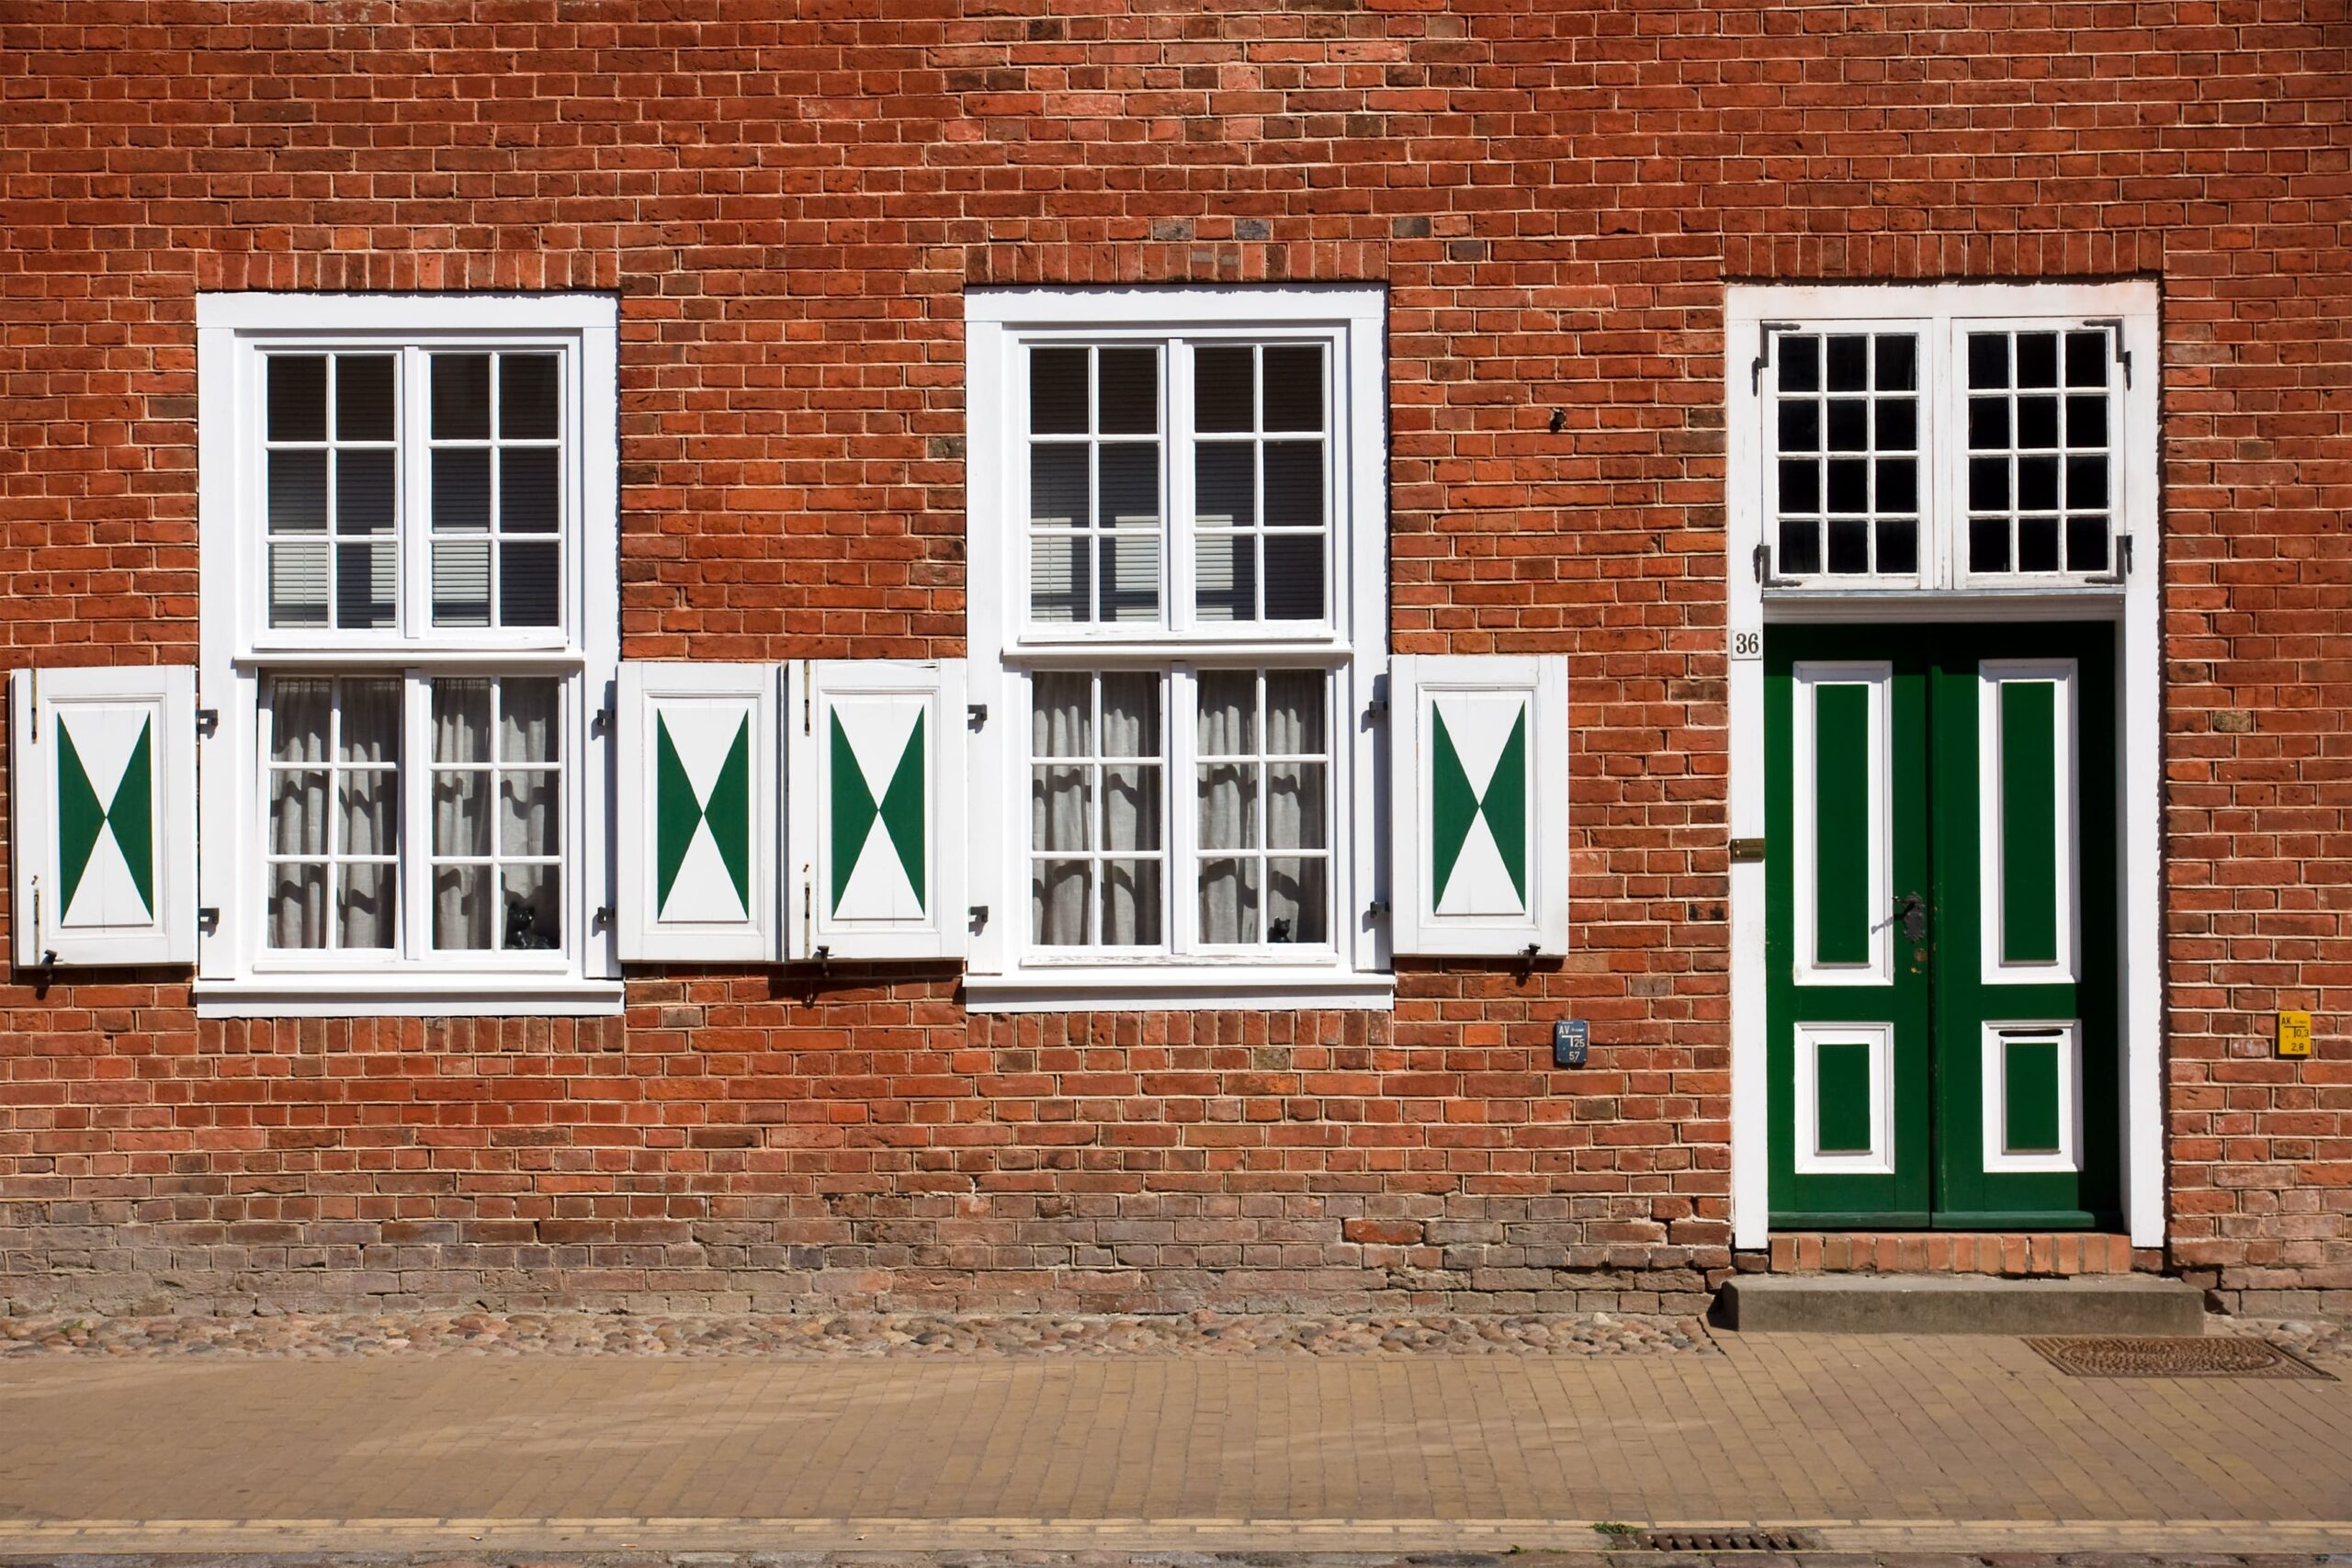 Fassade im holländisches Viertel in Potsdam mit grümn weißen Fenster und Türen